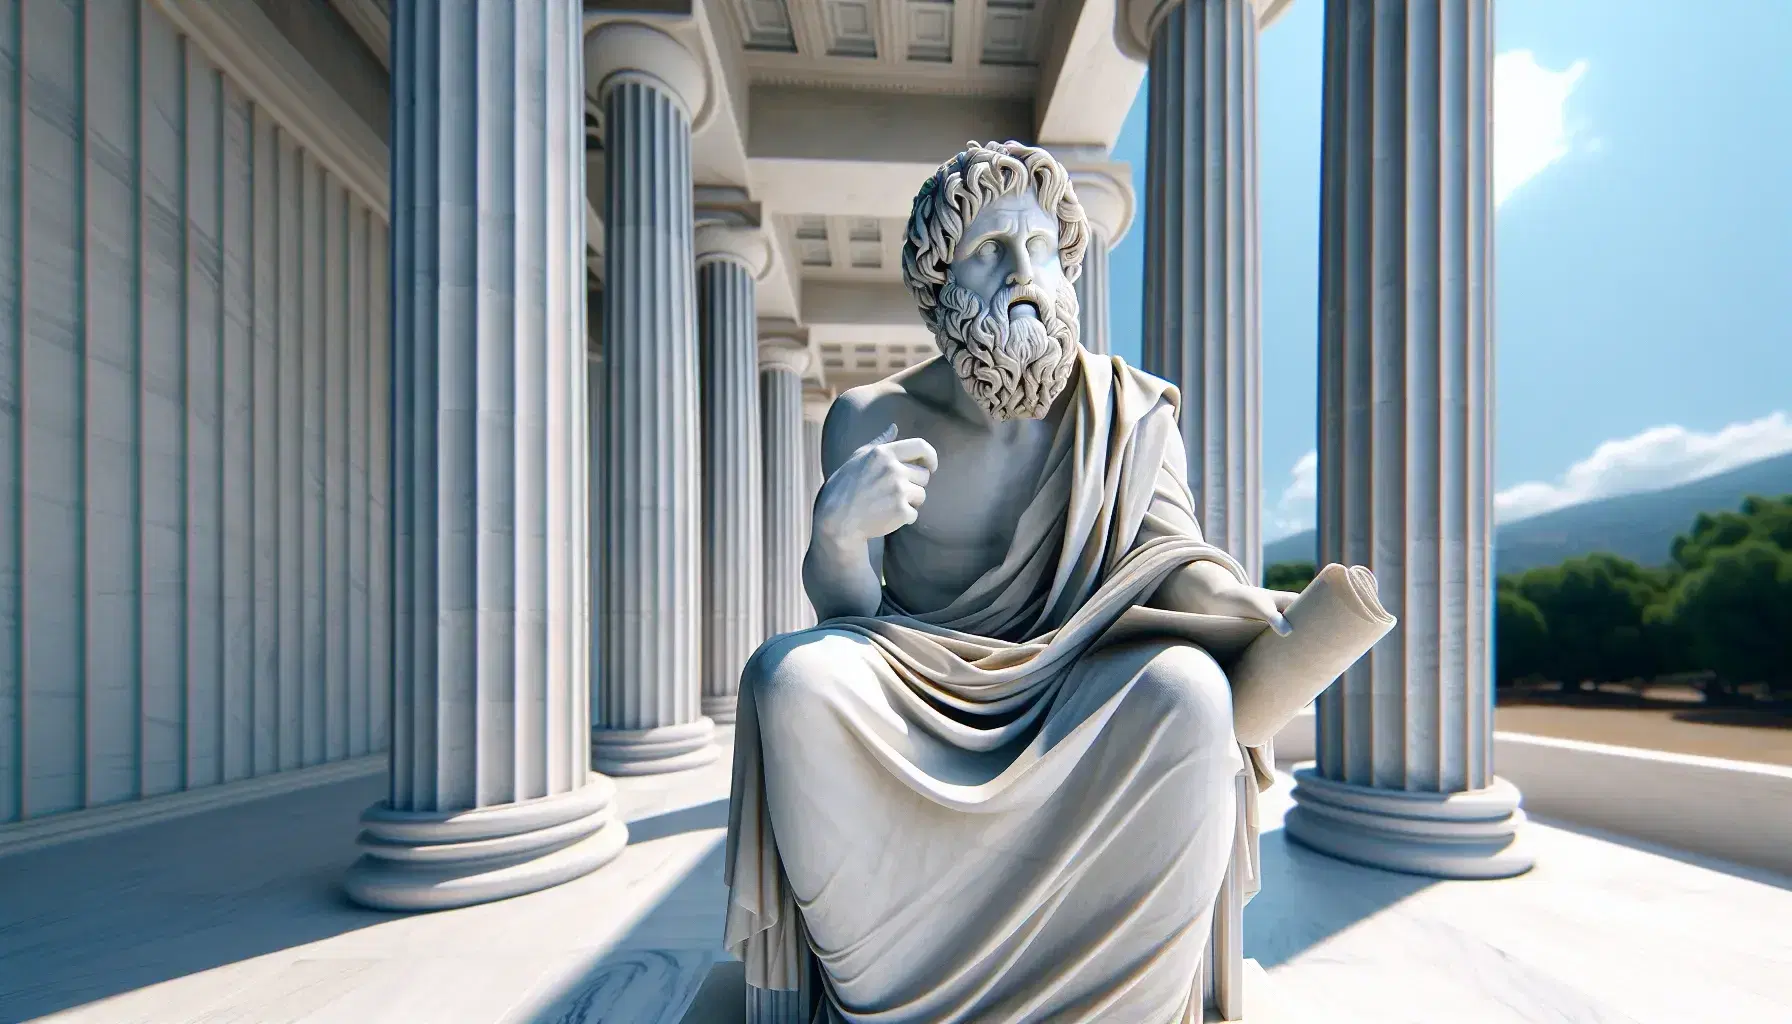 Estatua de mármol blanco de filósofo griego antiguo con pergamino, mano alzada explicando, ante columnas dóricas y cielo azul.